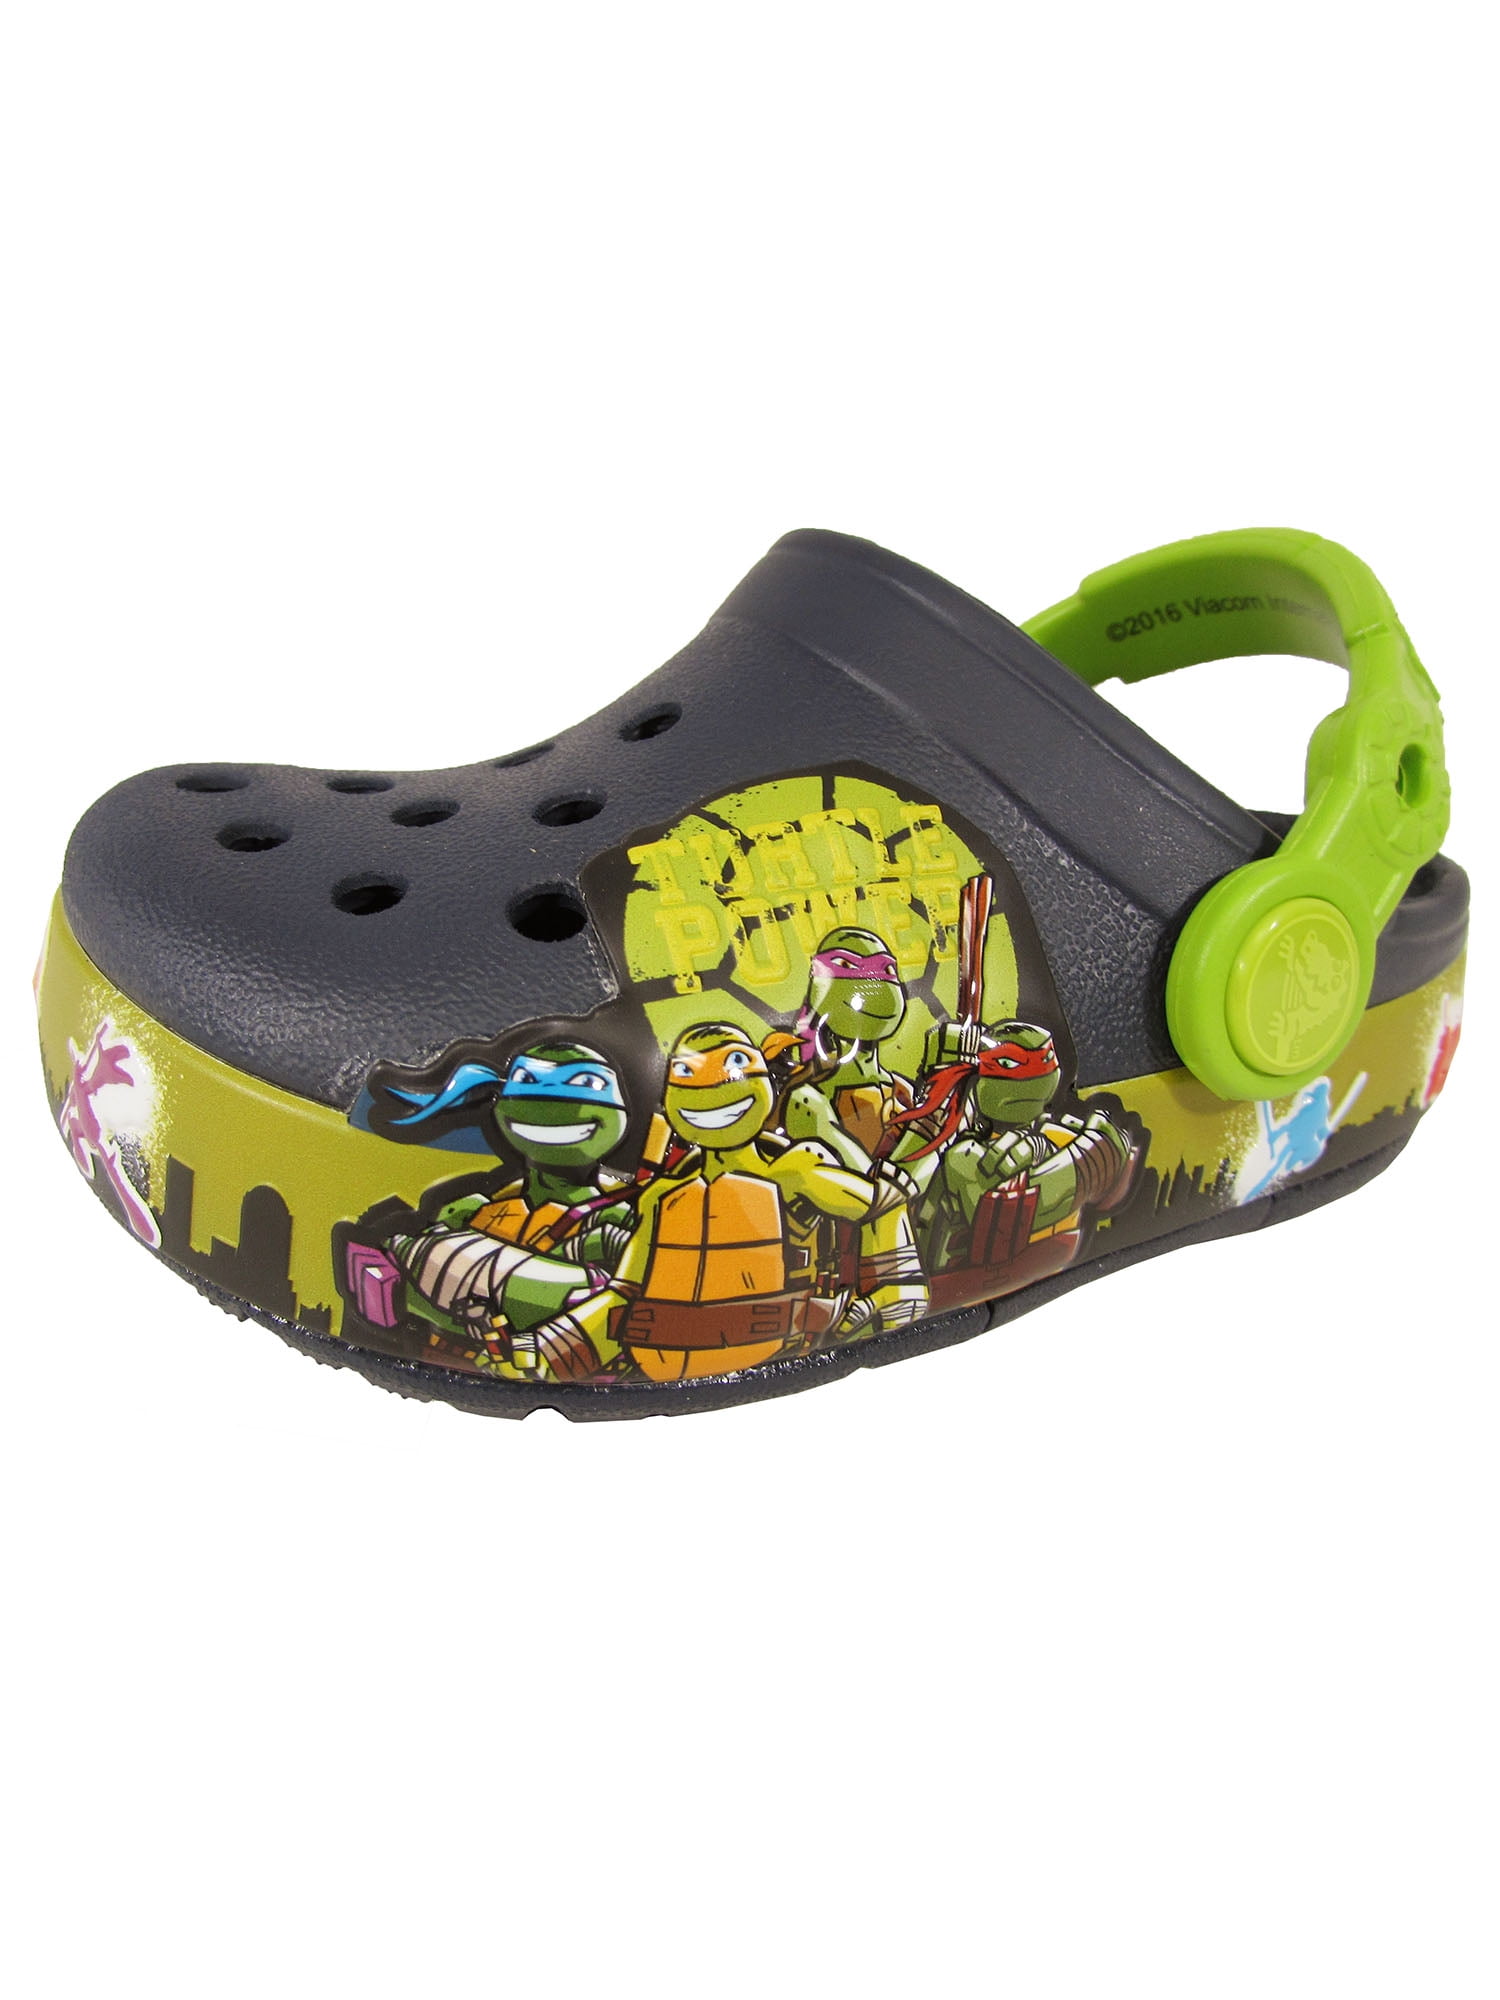 Boys Ninja Turtle Shoes Size 5 6 7 8 9 10 13 1 2 3 Flip Flop Flats Clogs Sandals 